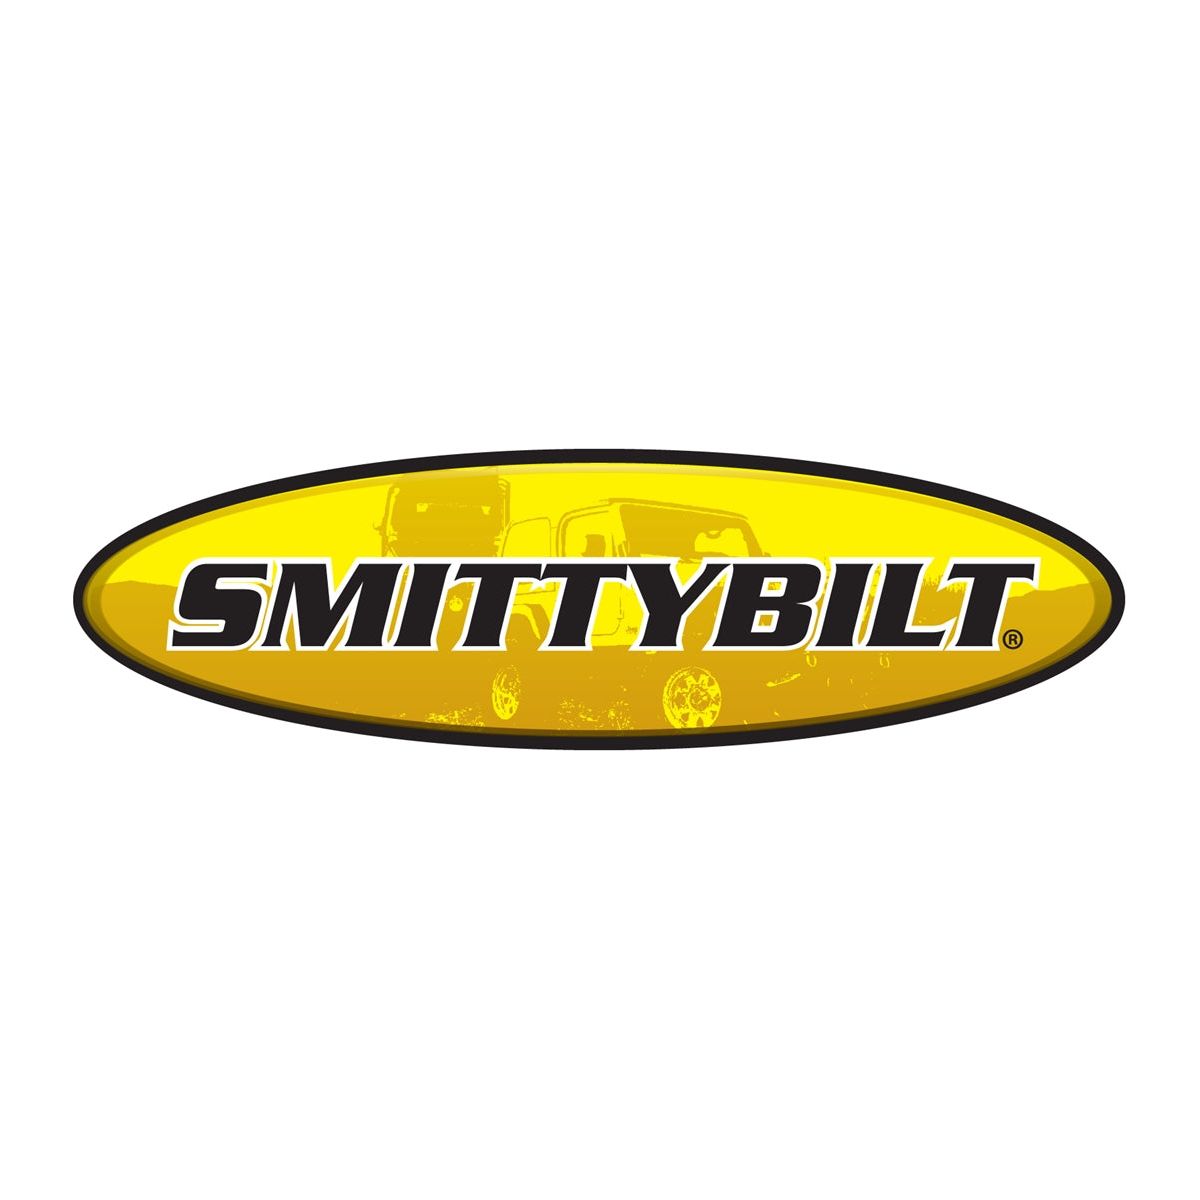 Smittybilt Atlas Rock Sliders With Step in Light Texture For 2007-18 Jeep Wrangler JK Unlimited 4 Door Models